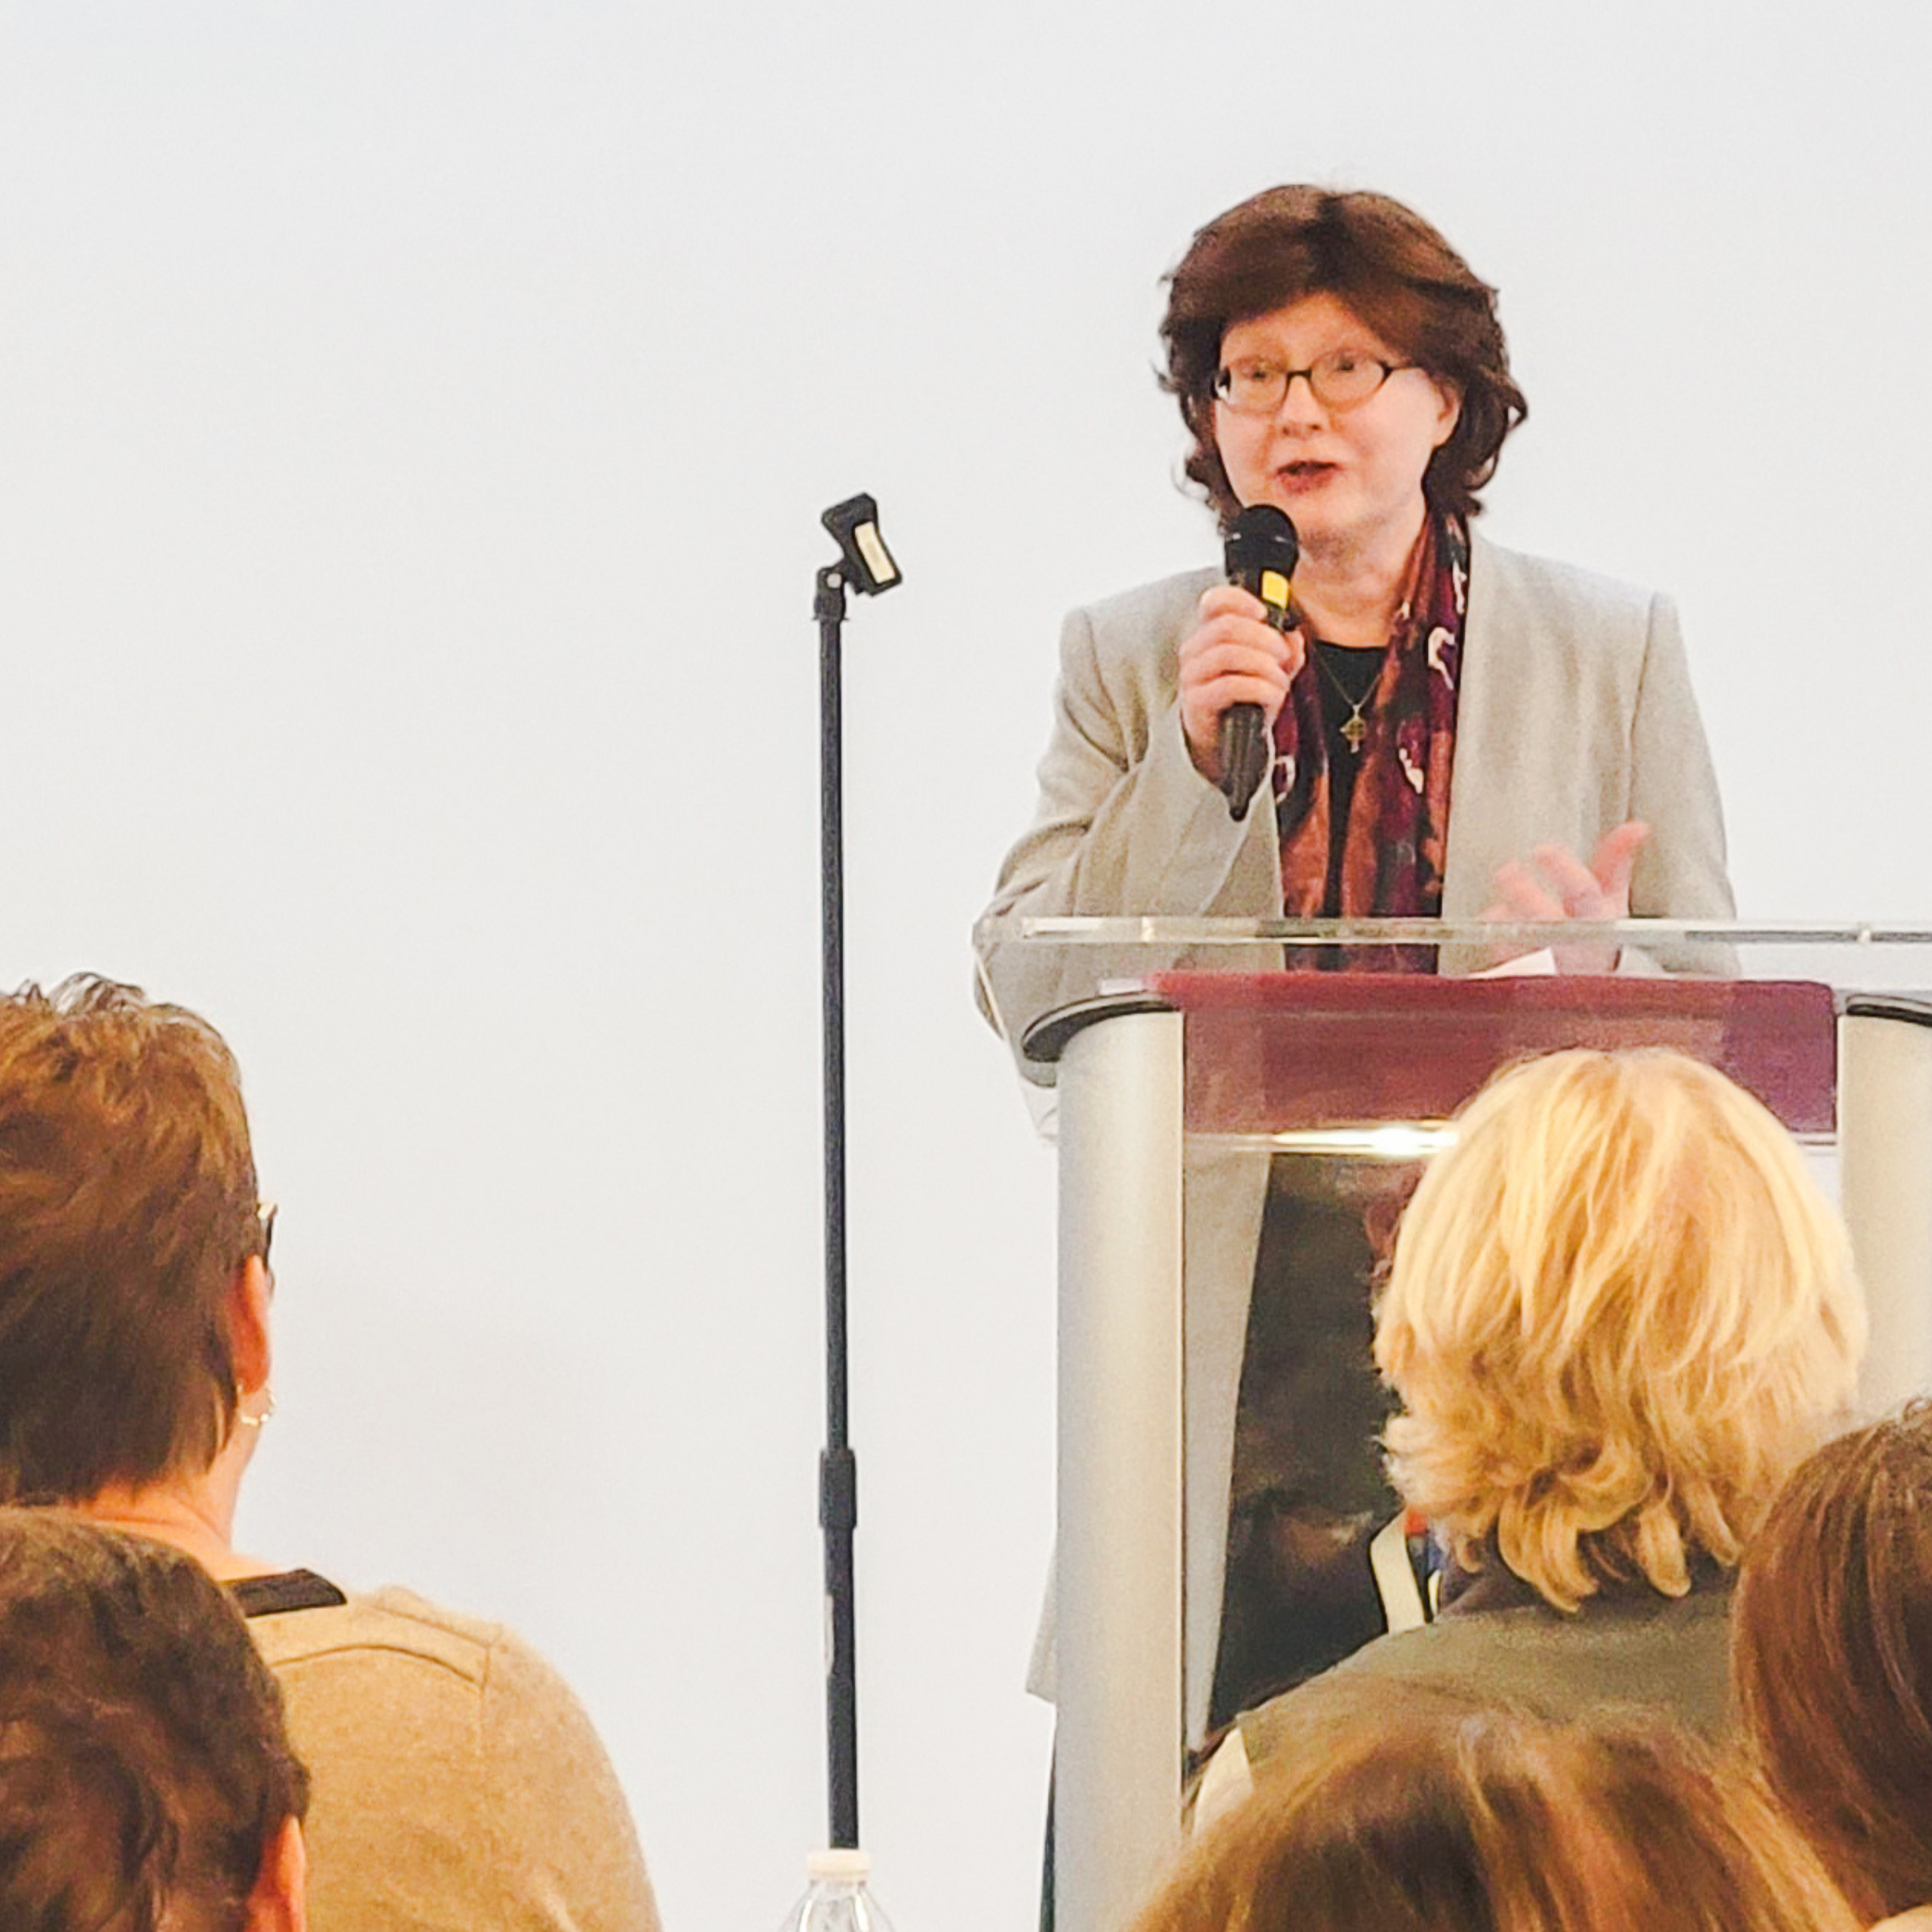 Maureen Pratt speaking at an event